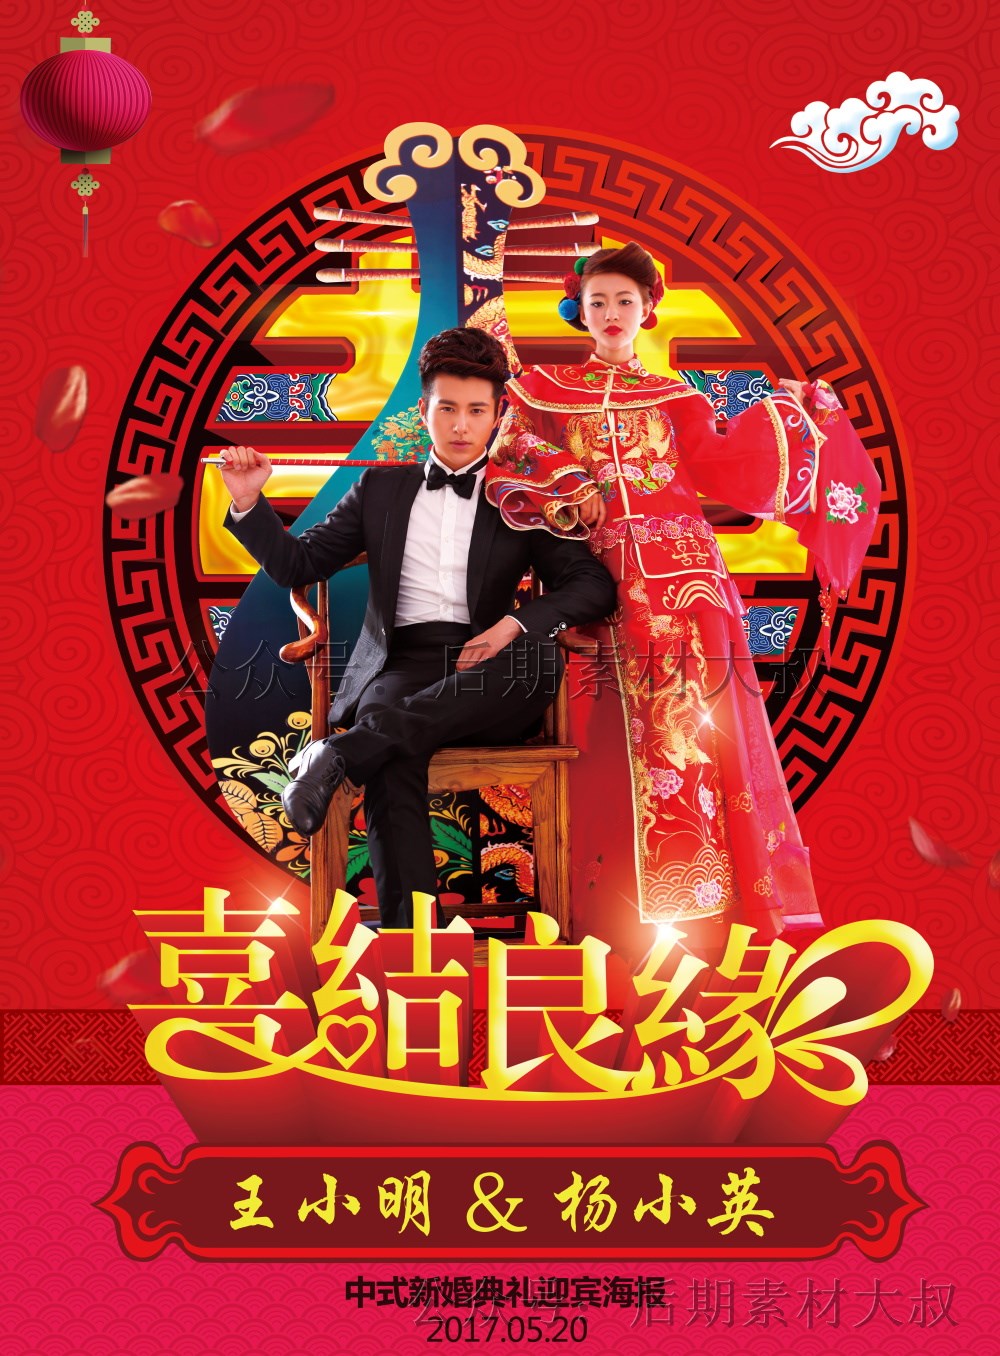 中式古装影楼婚纱婚礼婚庆红色喜庆签到迎宾海报psd模板设计素材